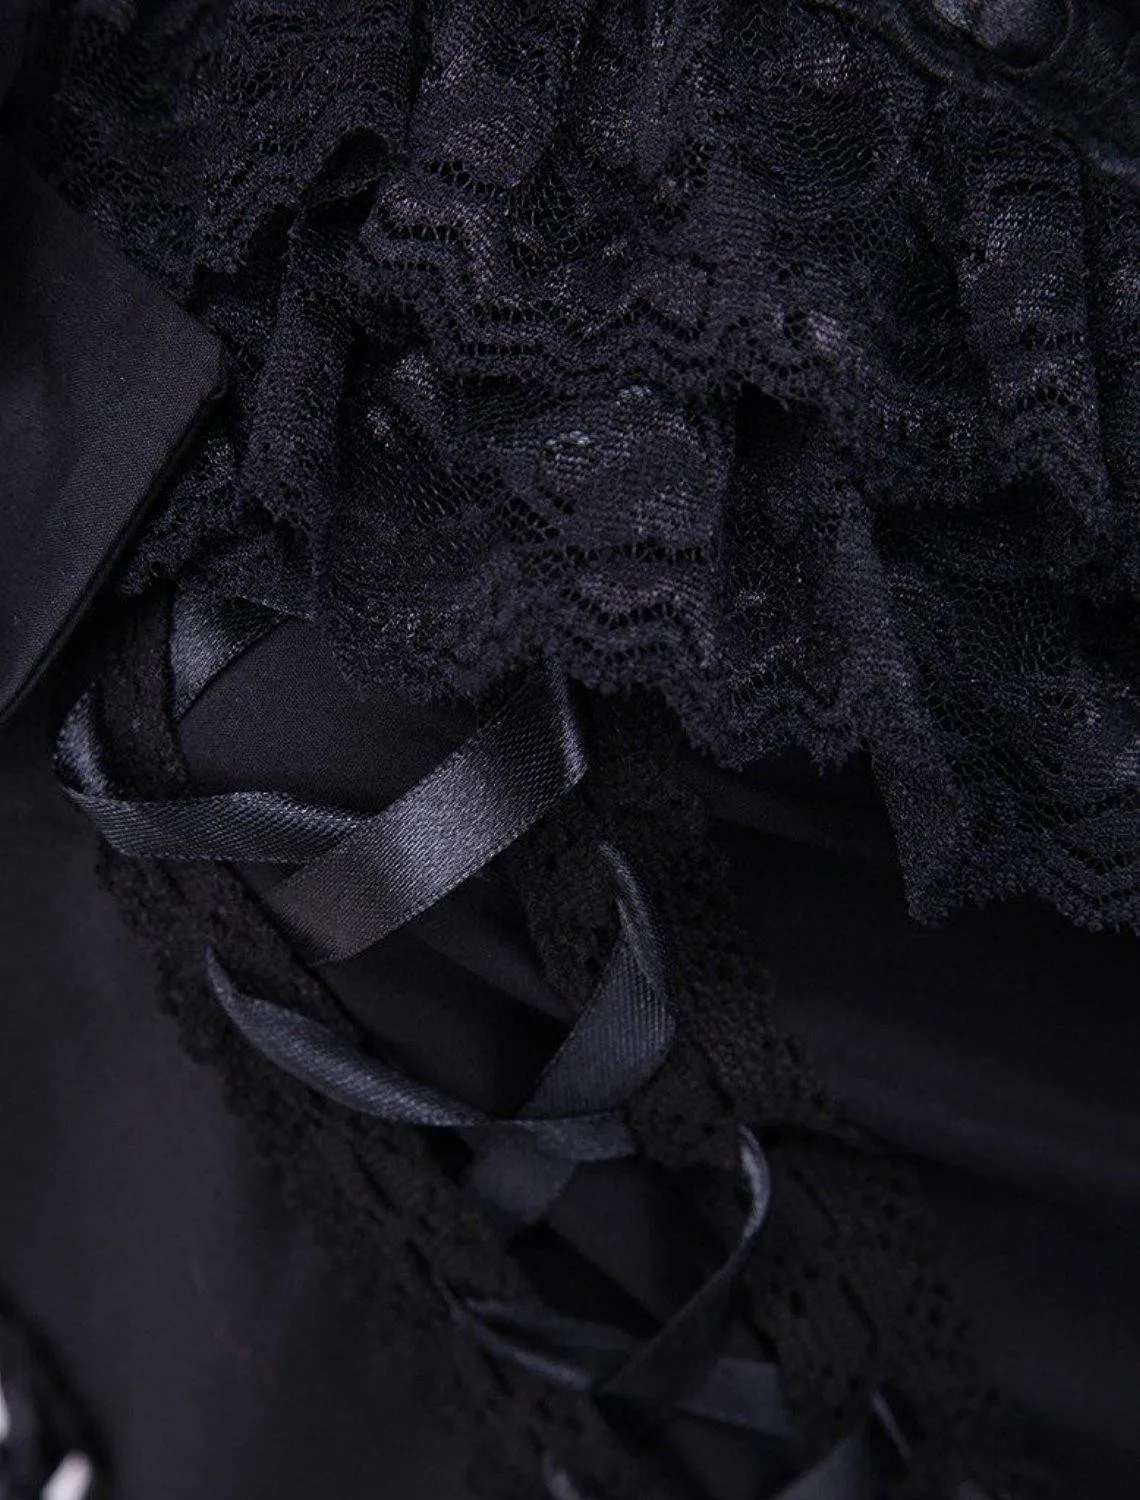 Платье средней длины Ainclu XS-XXL женское хлопковое черное платье без рукавов классическое платье лолиты с кружевом/бантом/лентой вечерние/другие